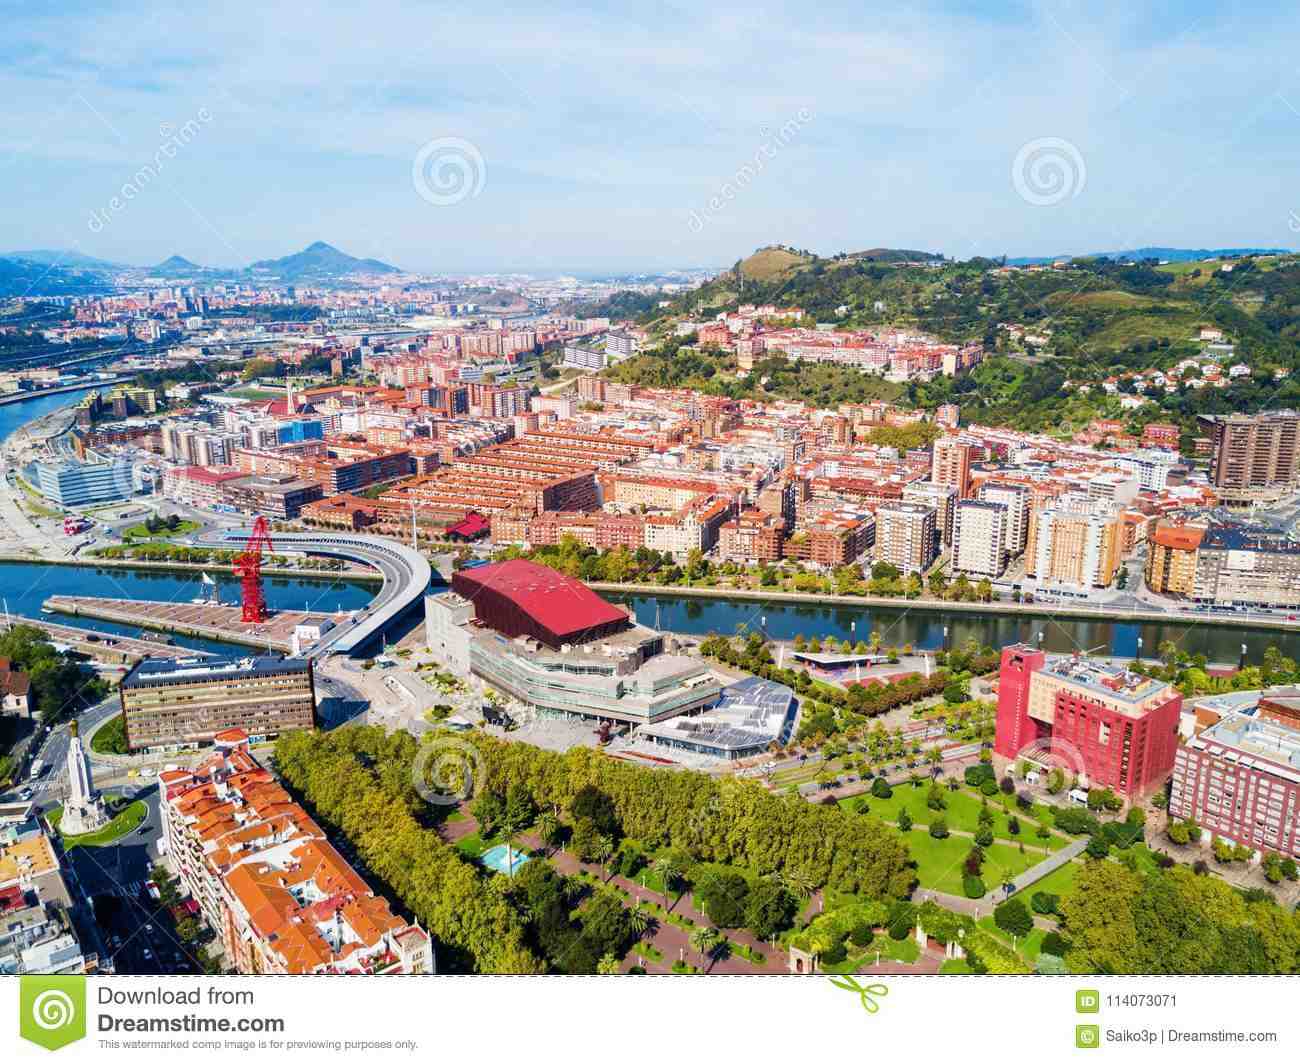 Comment se déplacer à Bilbao ?